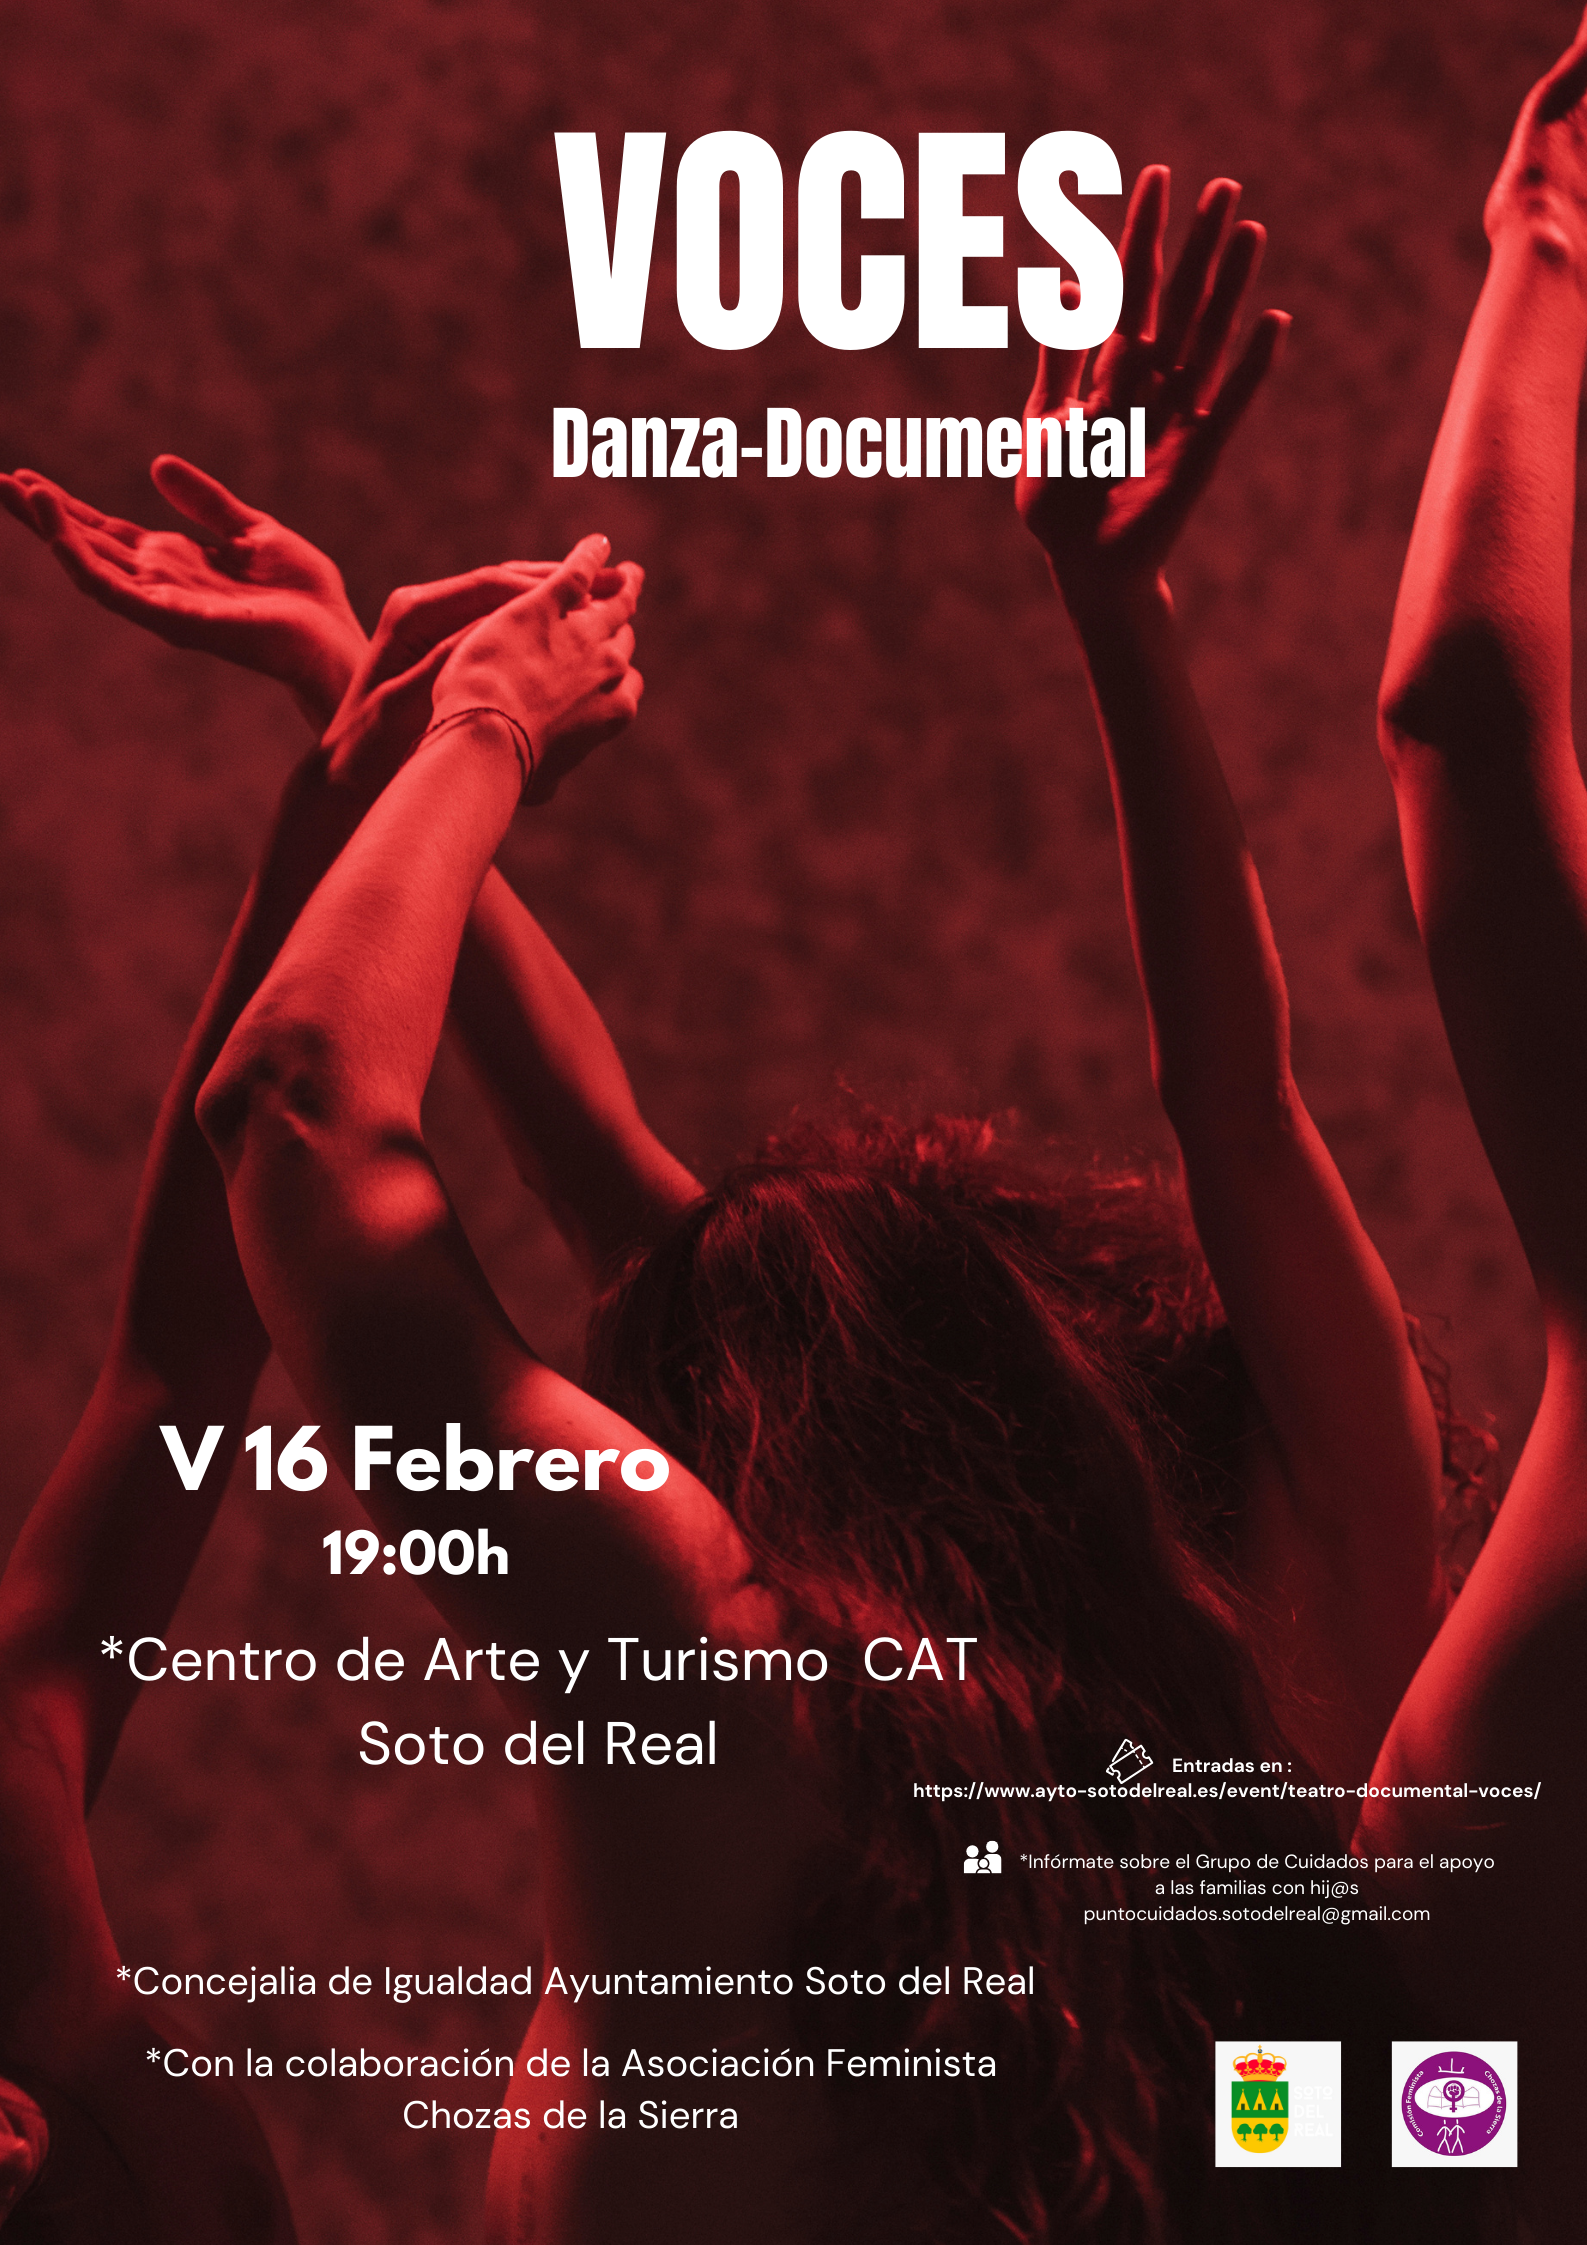 Voces, Danza-Documental